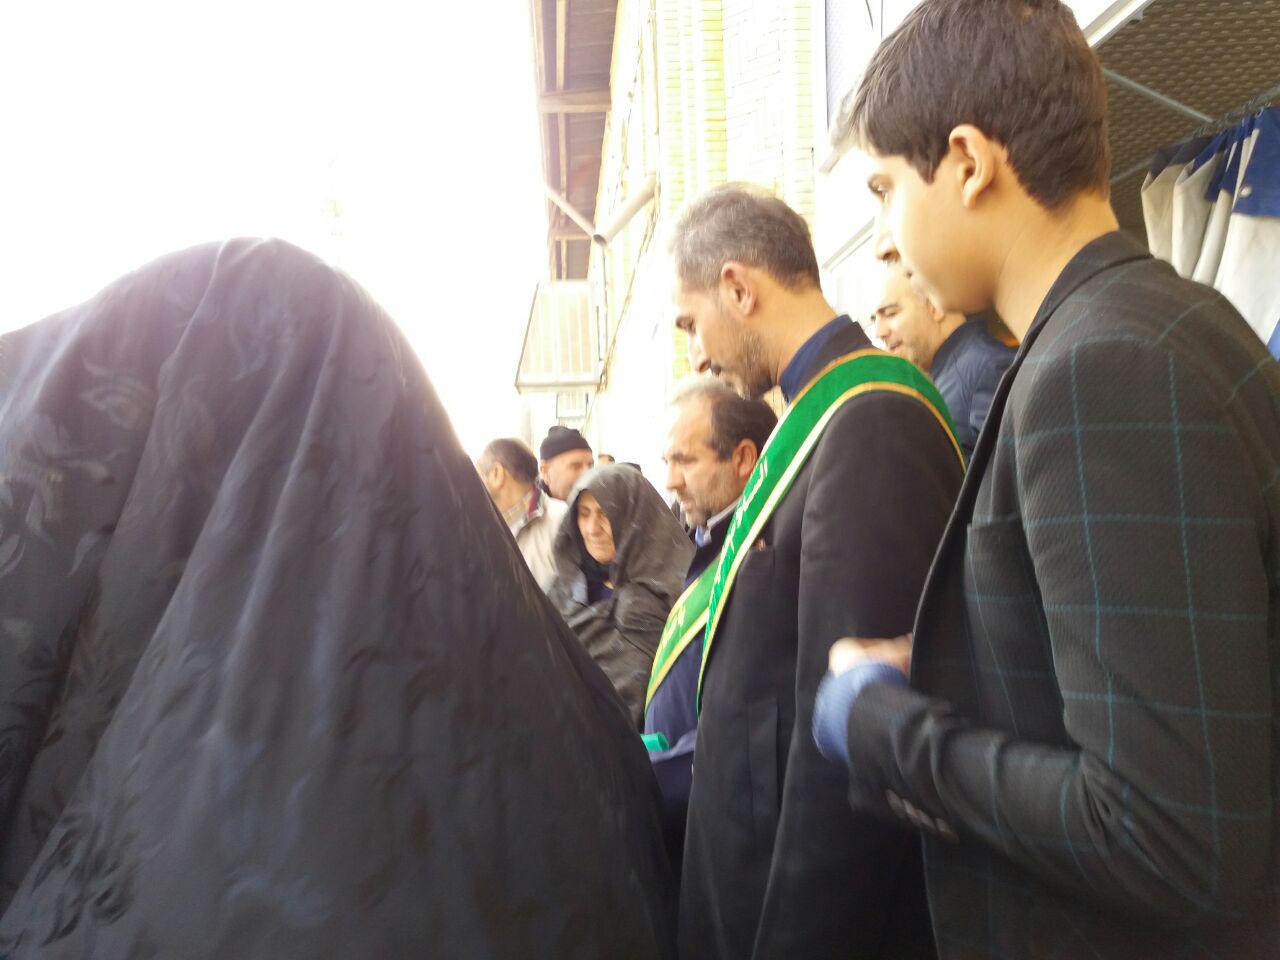 استقبال مردم شهرستان خوي از پرچم متبرک مسجد مقدس جمکران وخادمان آن به روايت تصوير